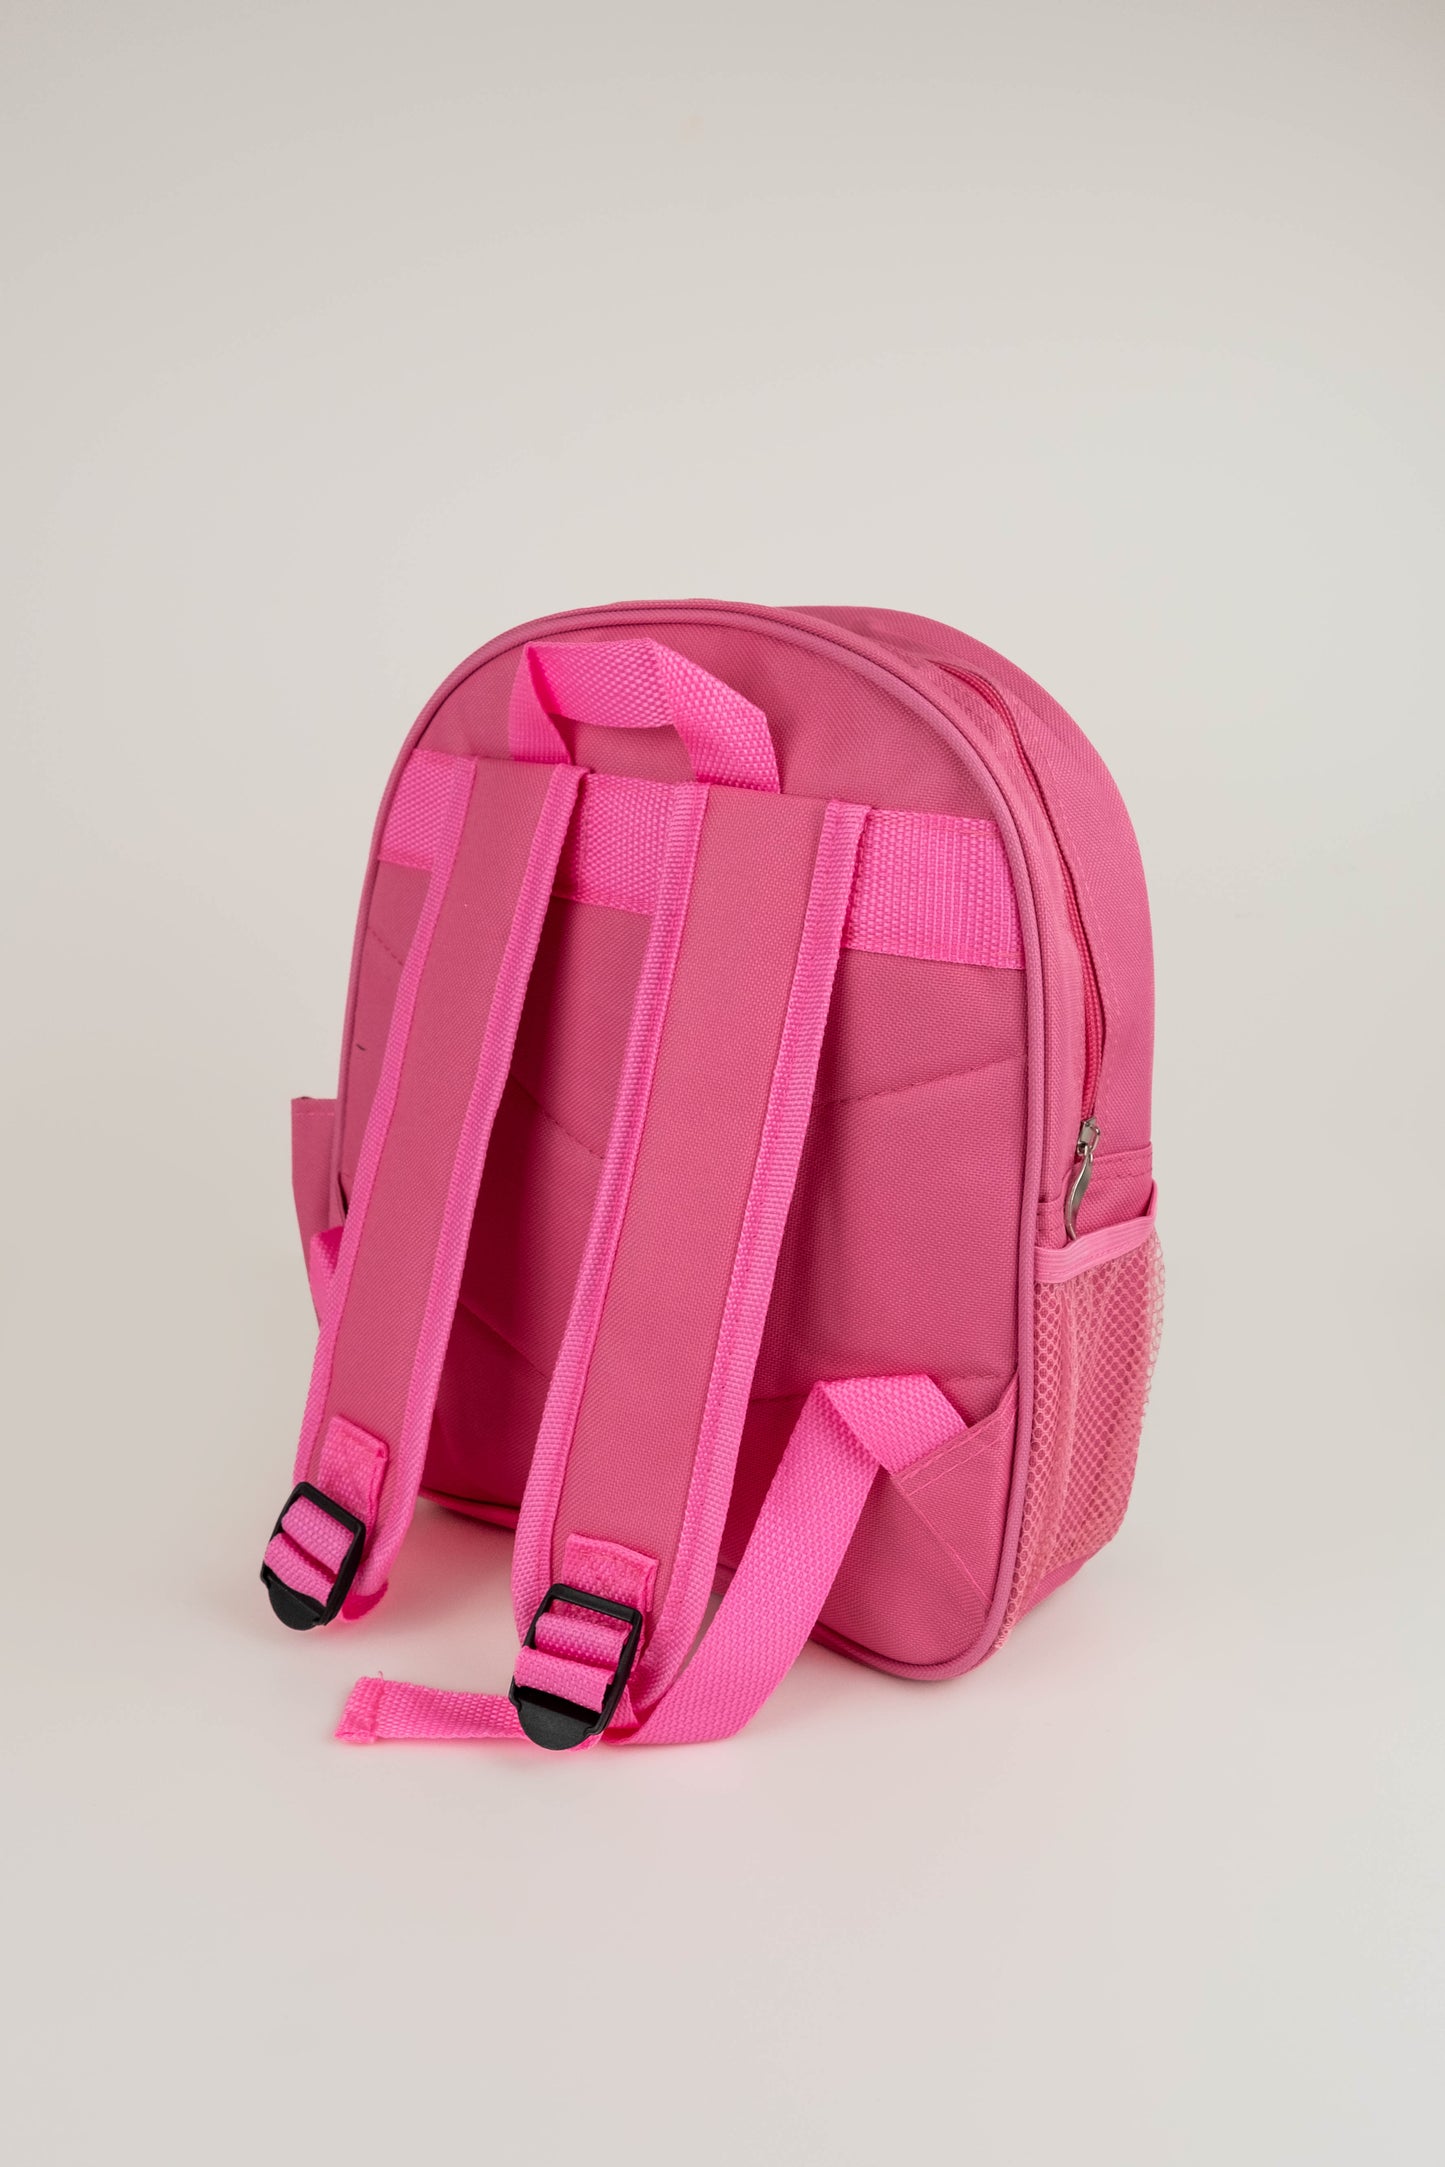 Children’s Personalised Backpack - Mermaid Design